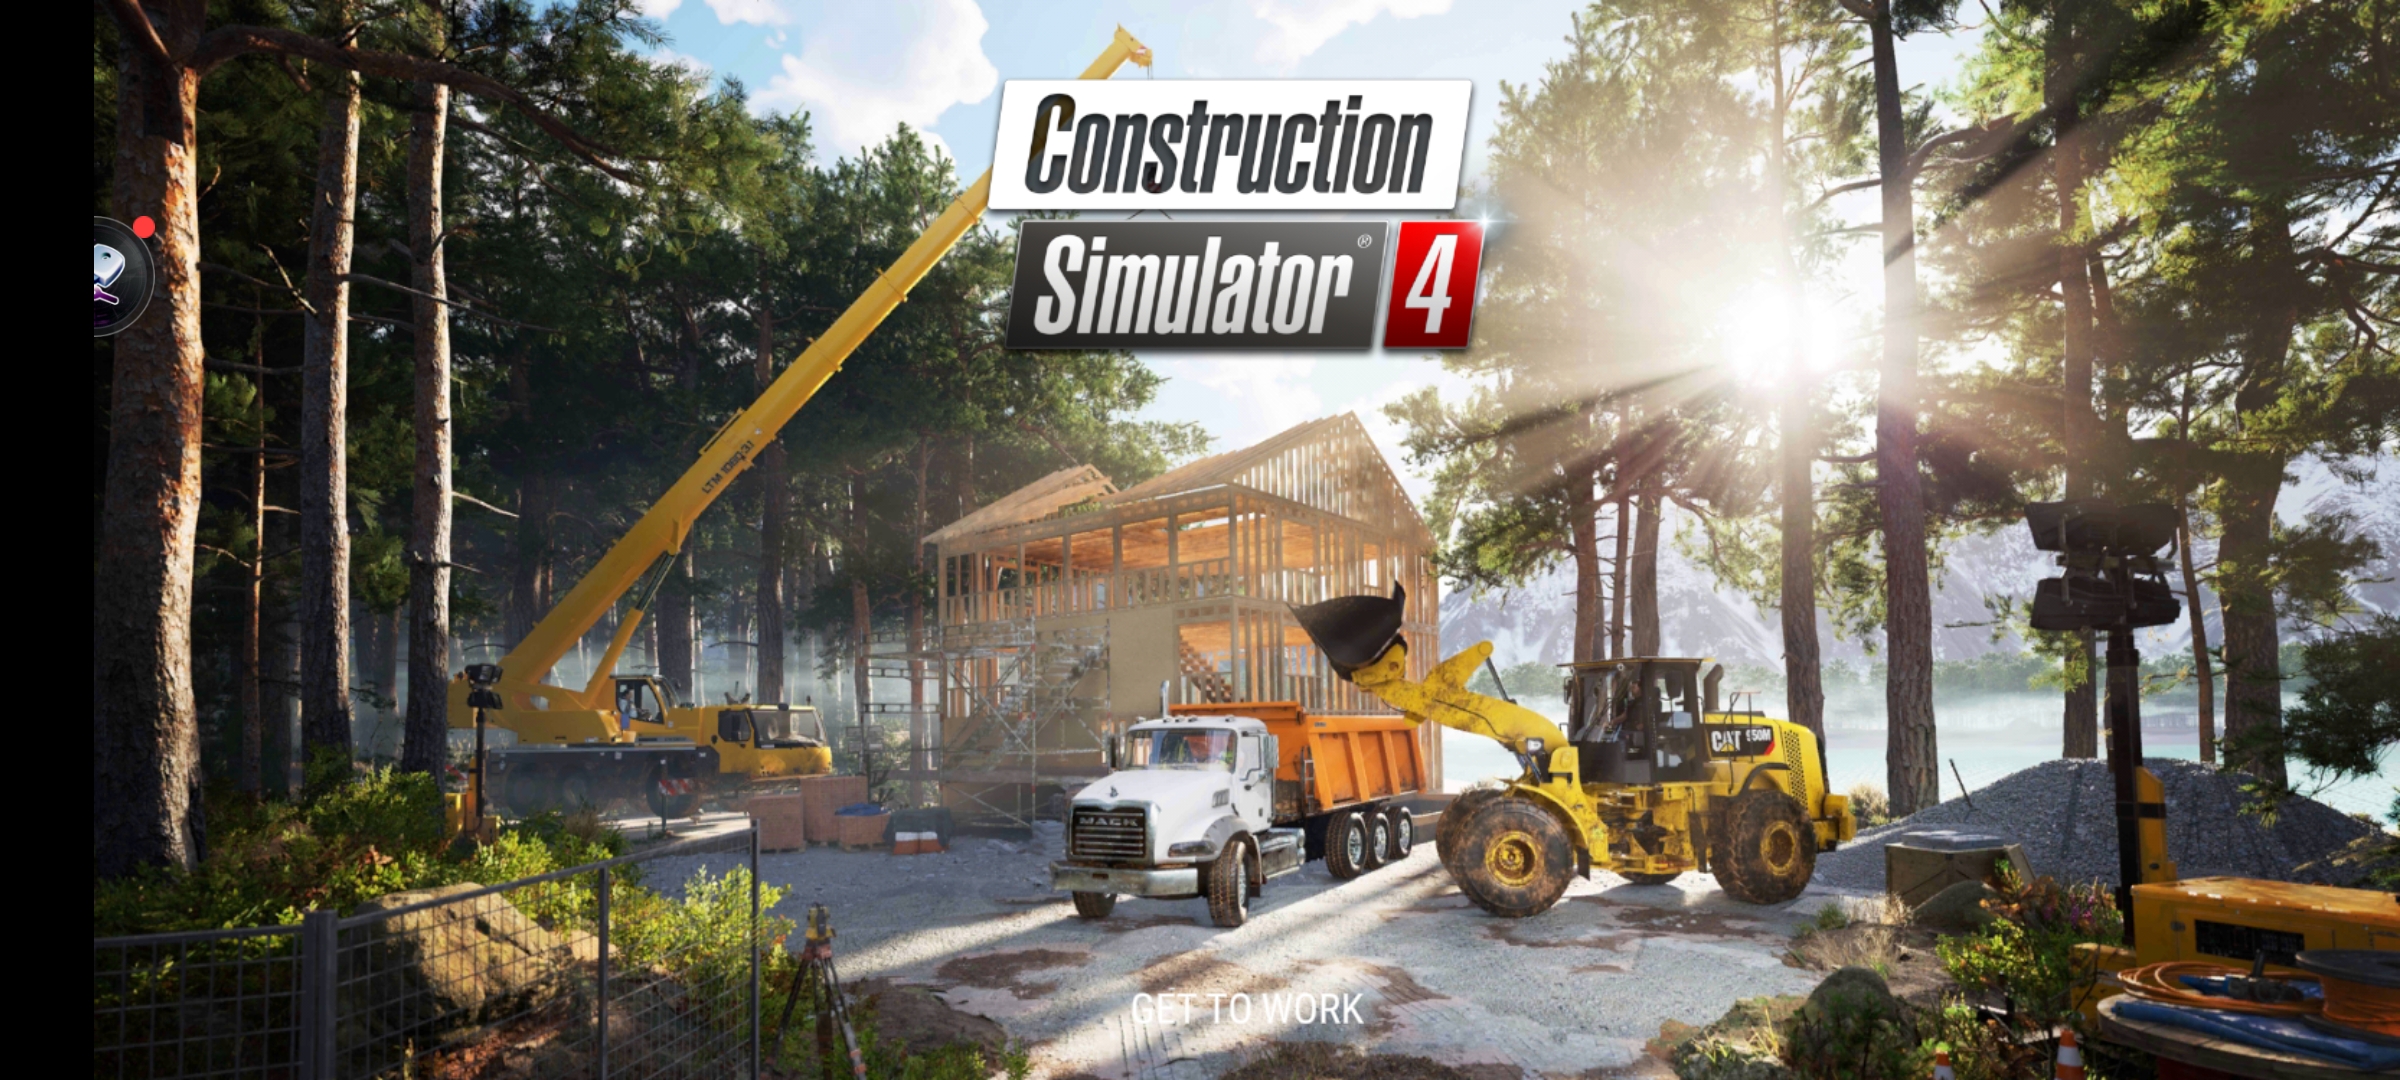 Вышла новая игра Construction Simulator 4. / обзор игры